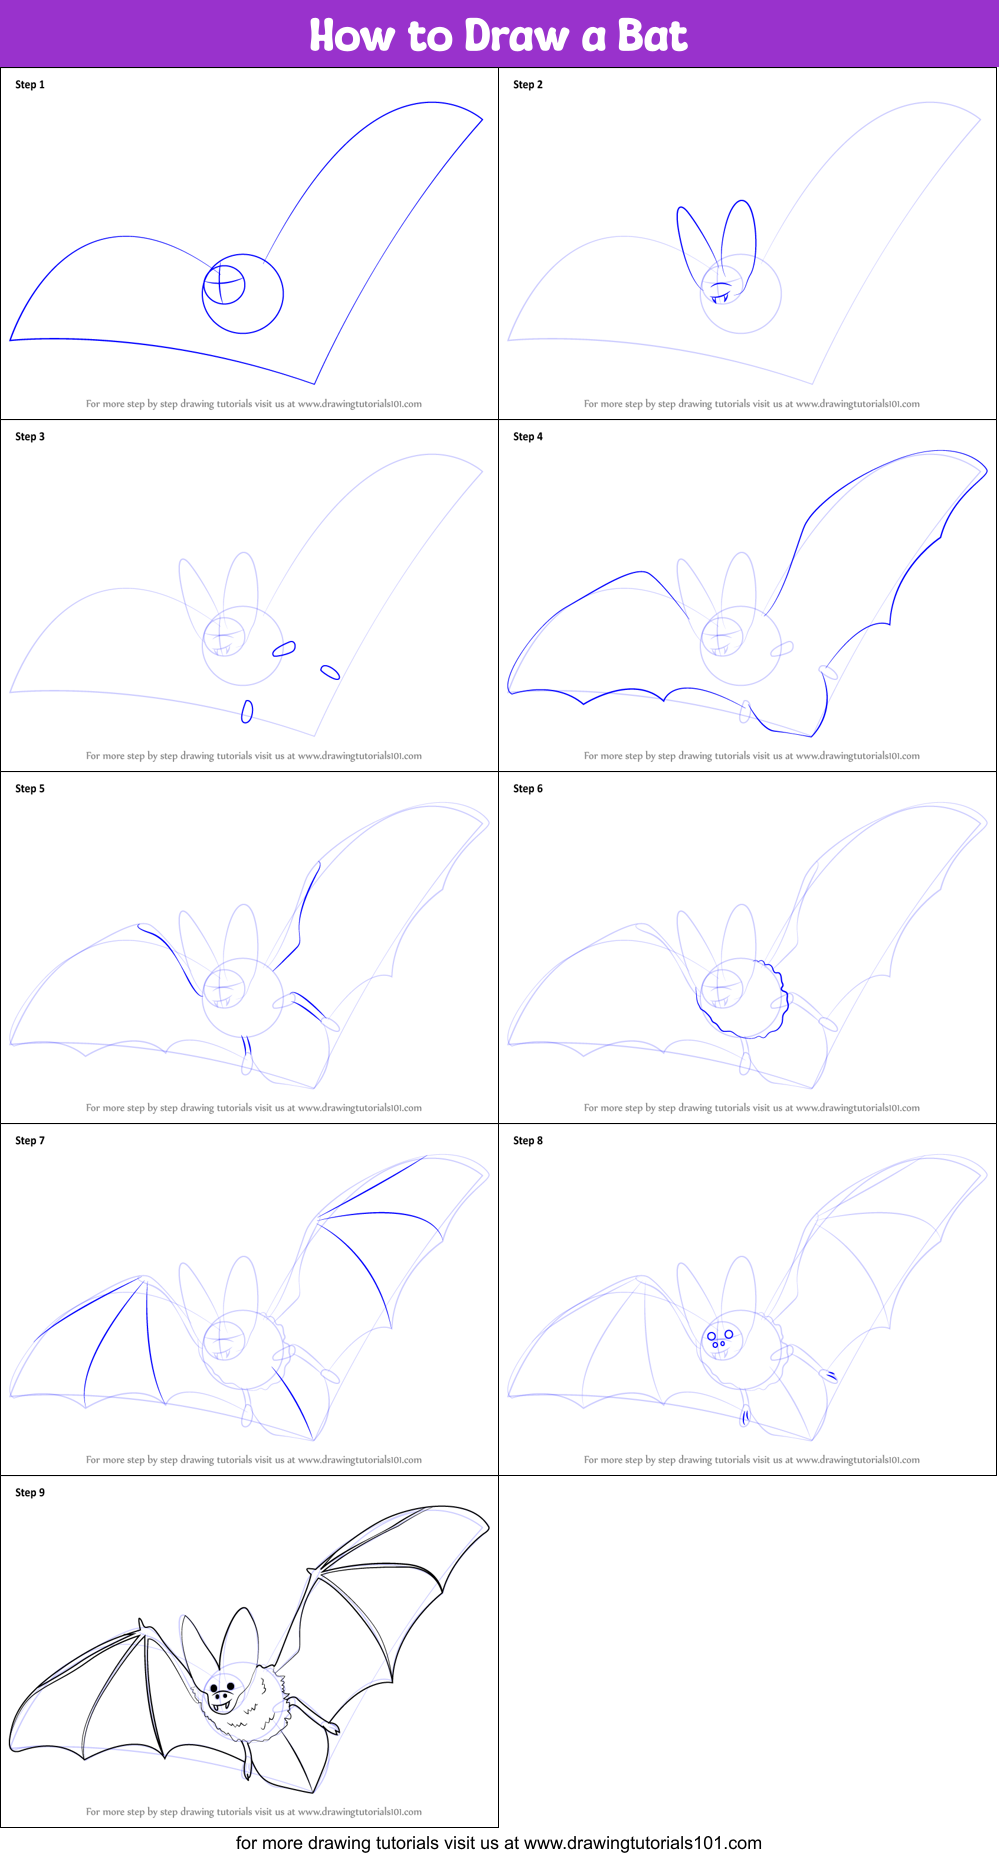 How to Draw a Bat (Birds) Step by Step | DrawingTutorials101.com